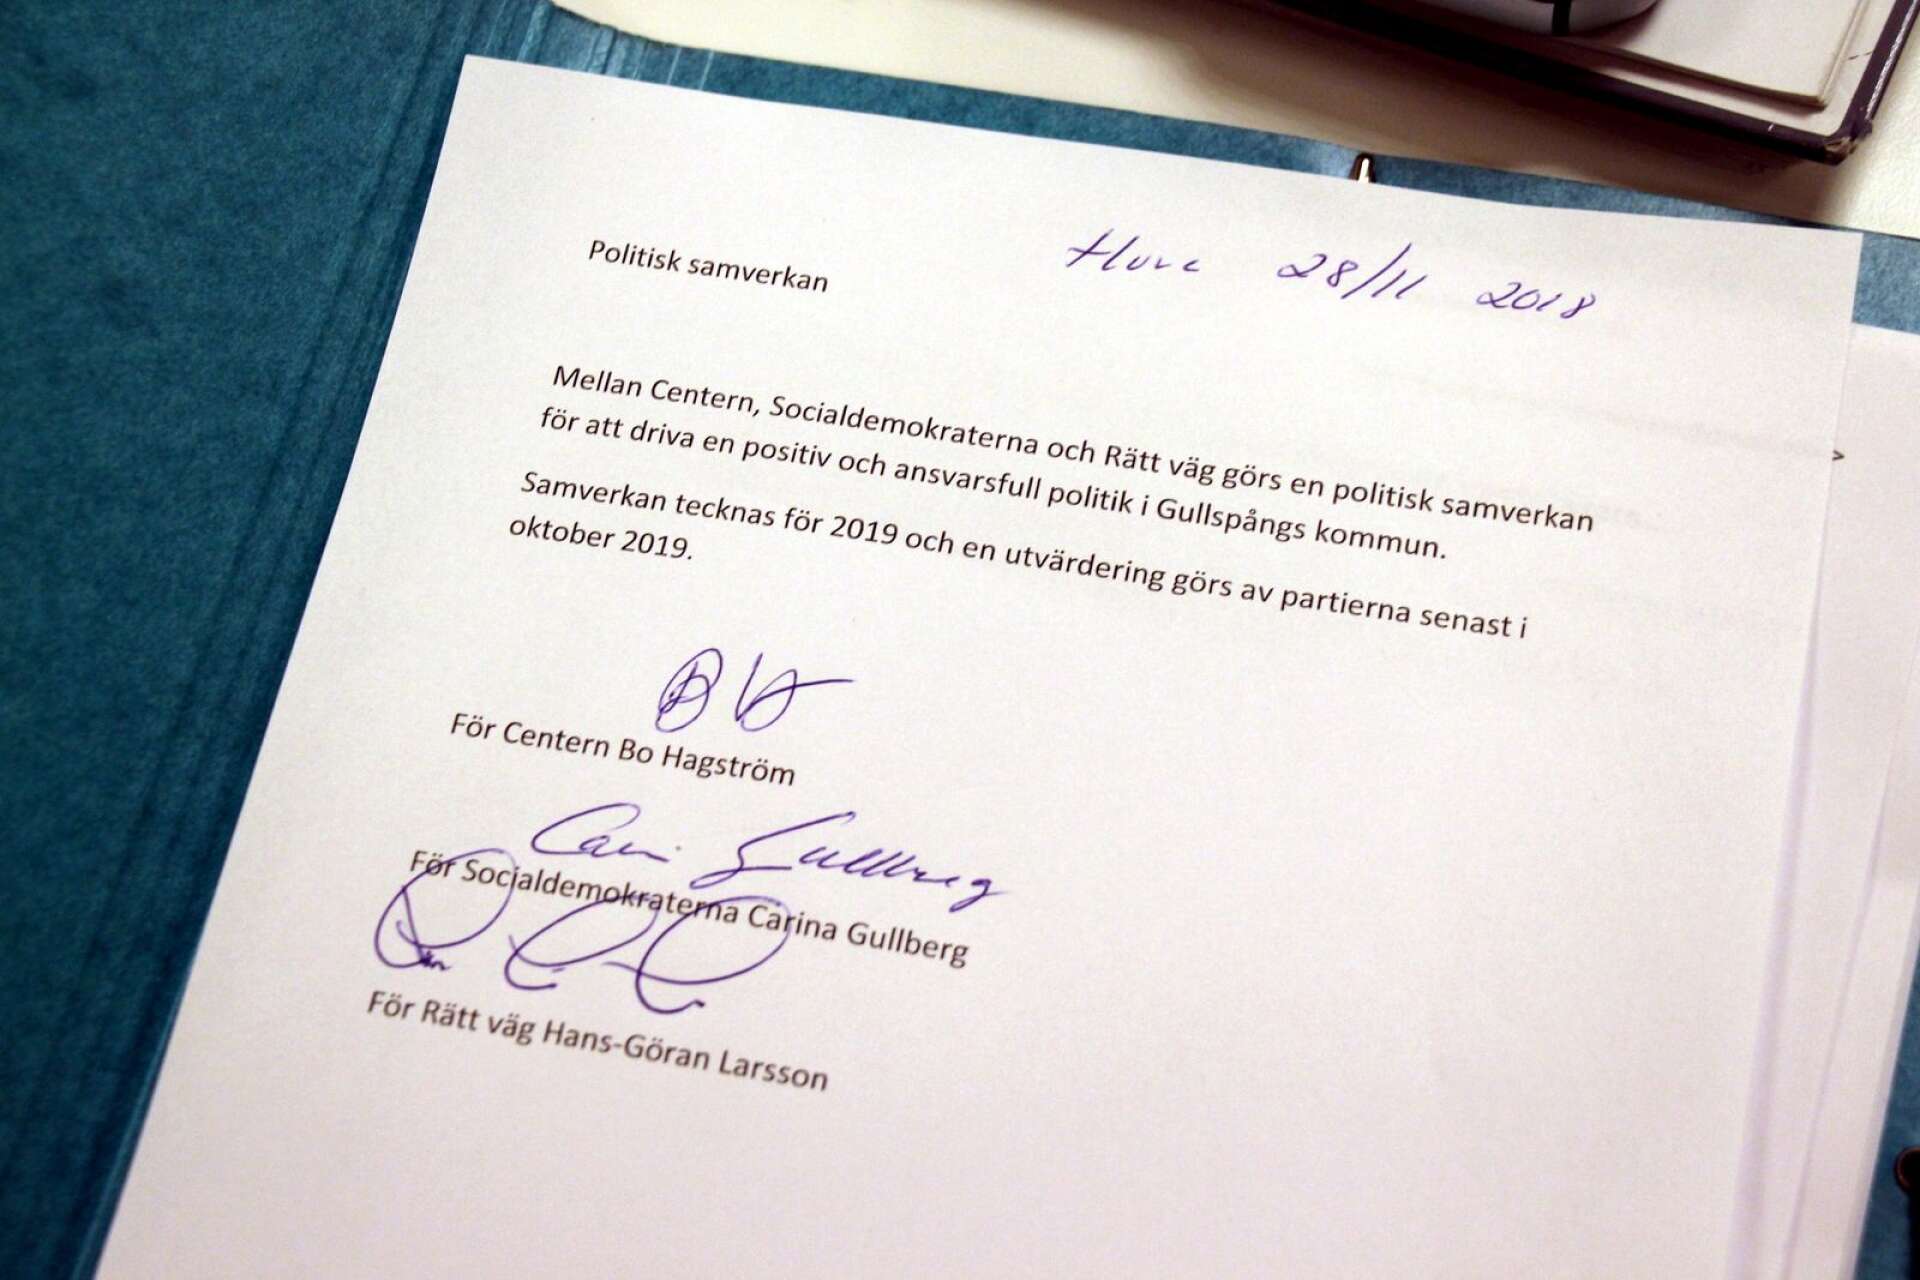 Dokument om samverkan mellan partierna, underskrivet av Carina Gullberg (S), Bo Hagström (C) och Hans-Göran Larsson (RV. 